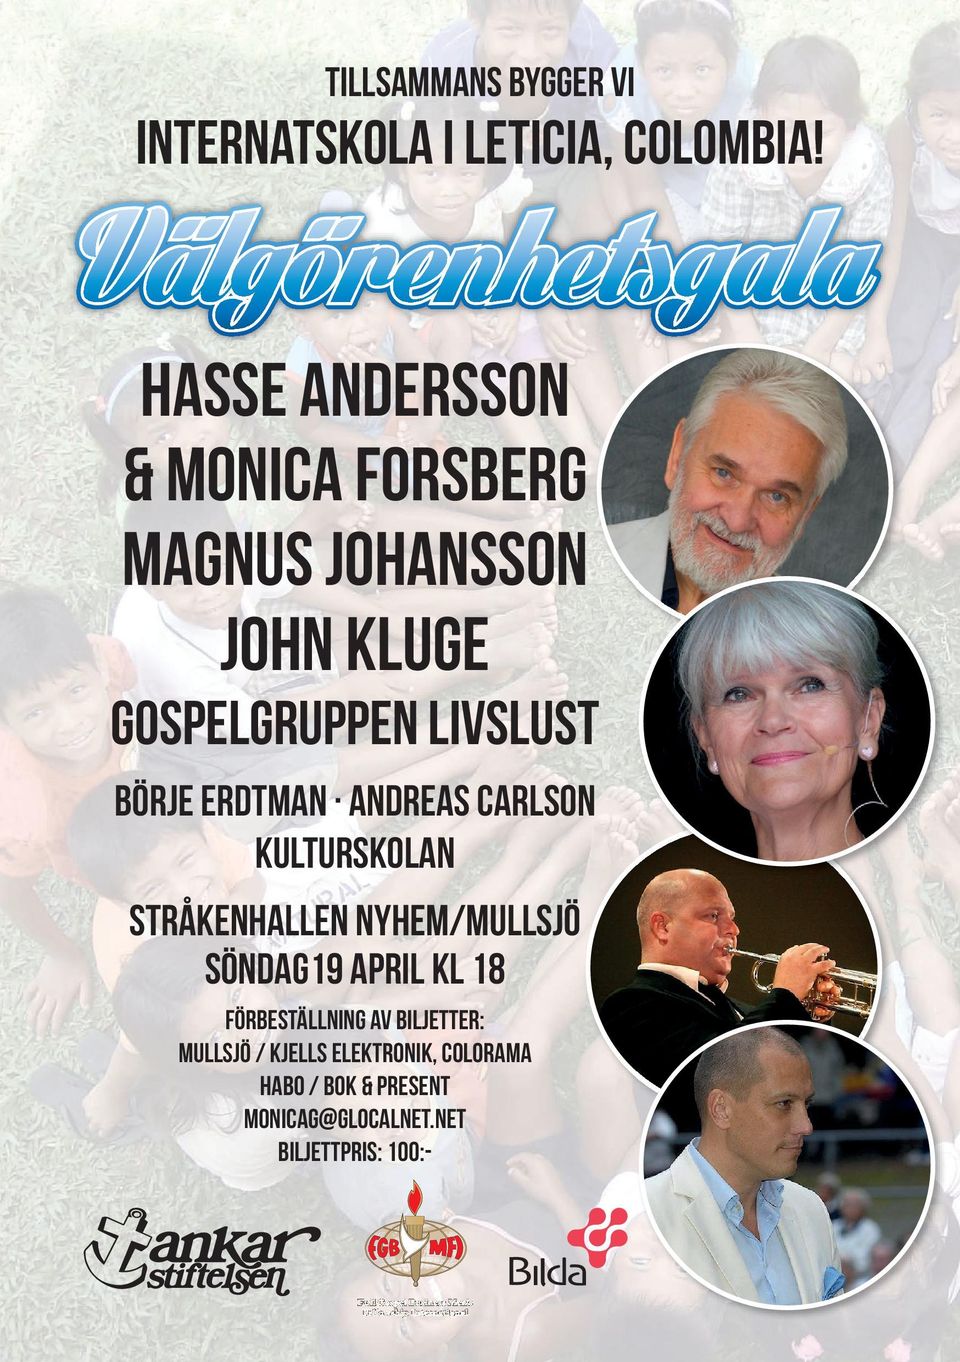 Erdtman Andreas Carlson Kulturskolan Stråkenhallen nyhem/mullsjö söndag19 april kl 18